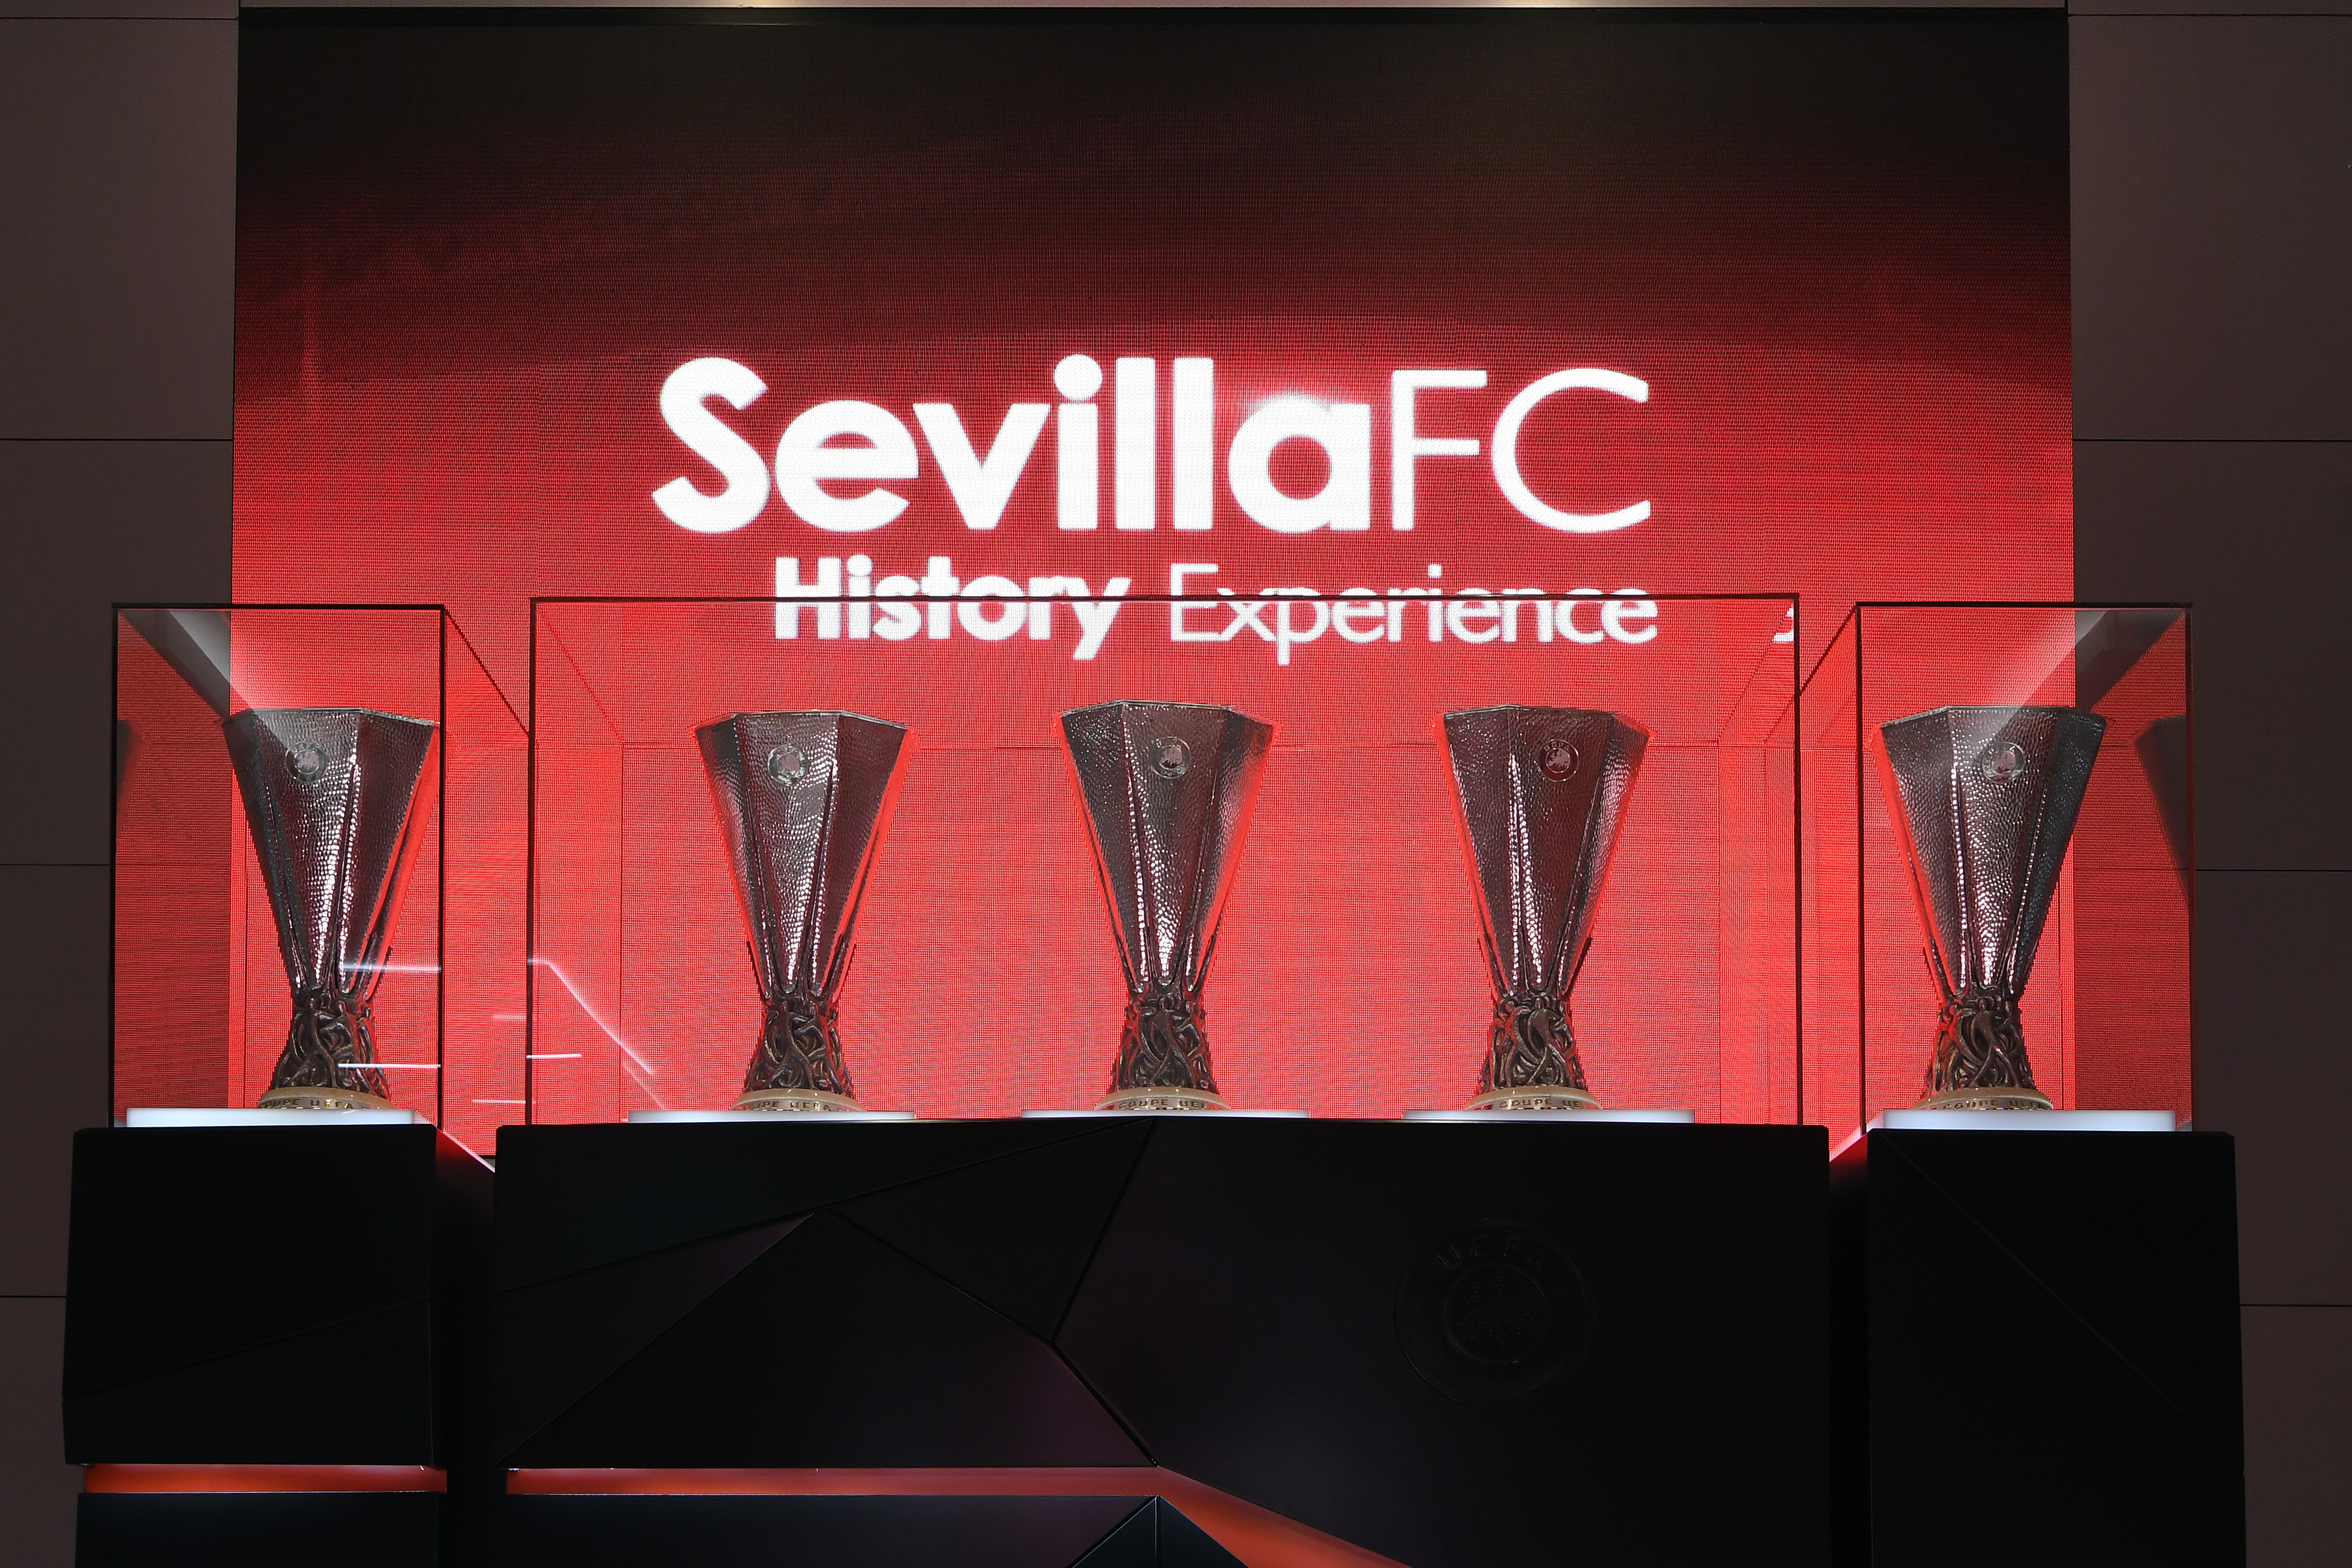 Sevilla FC's museum